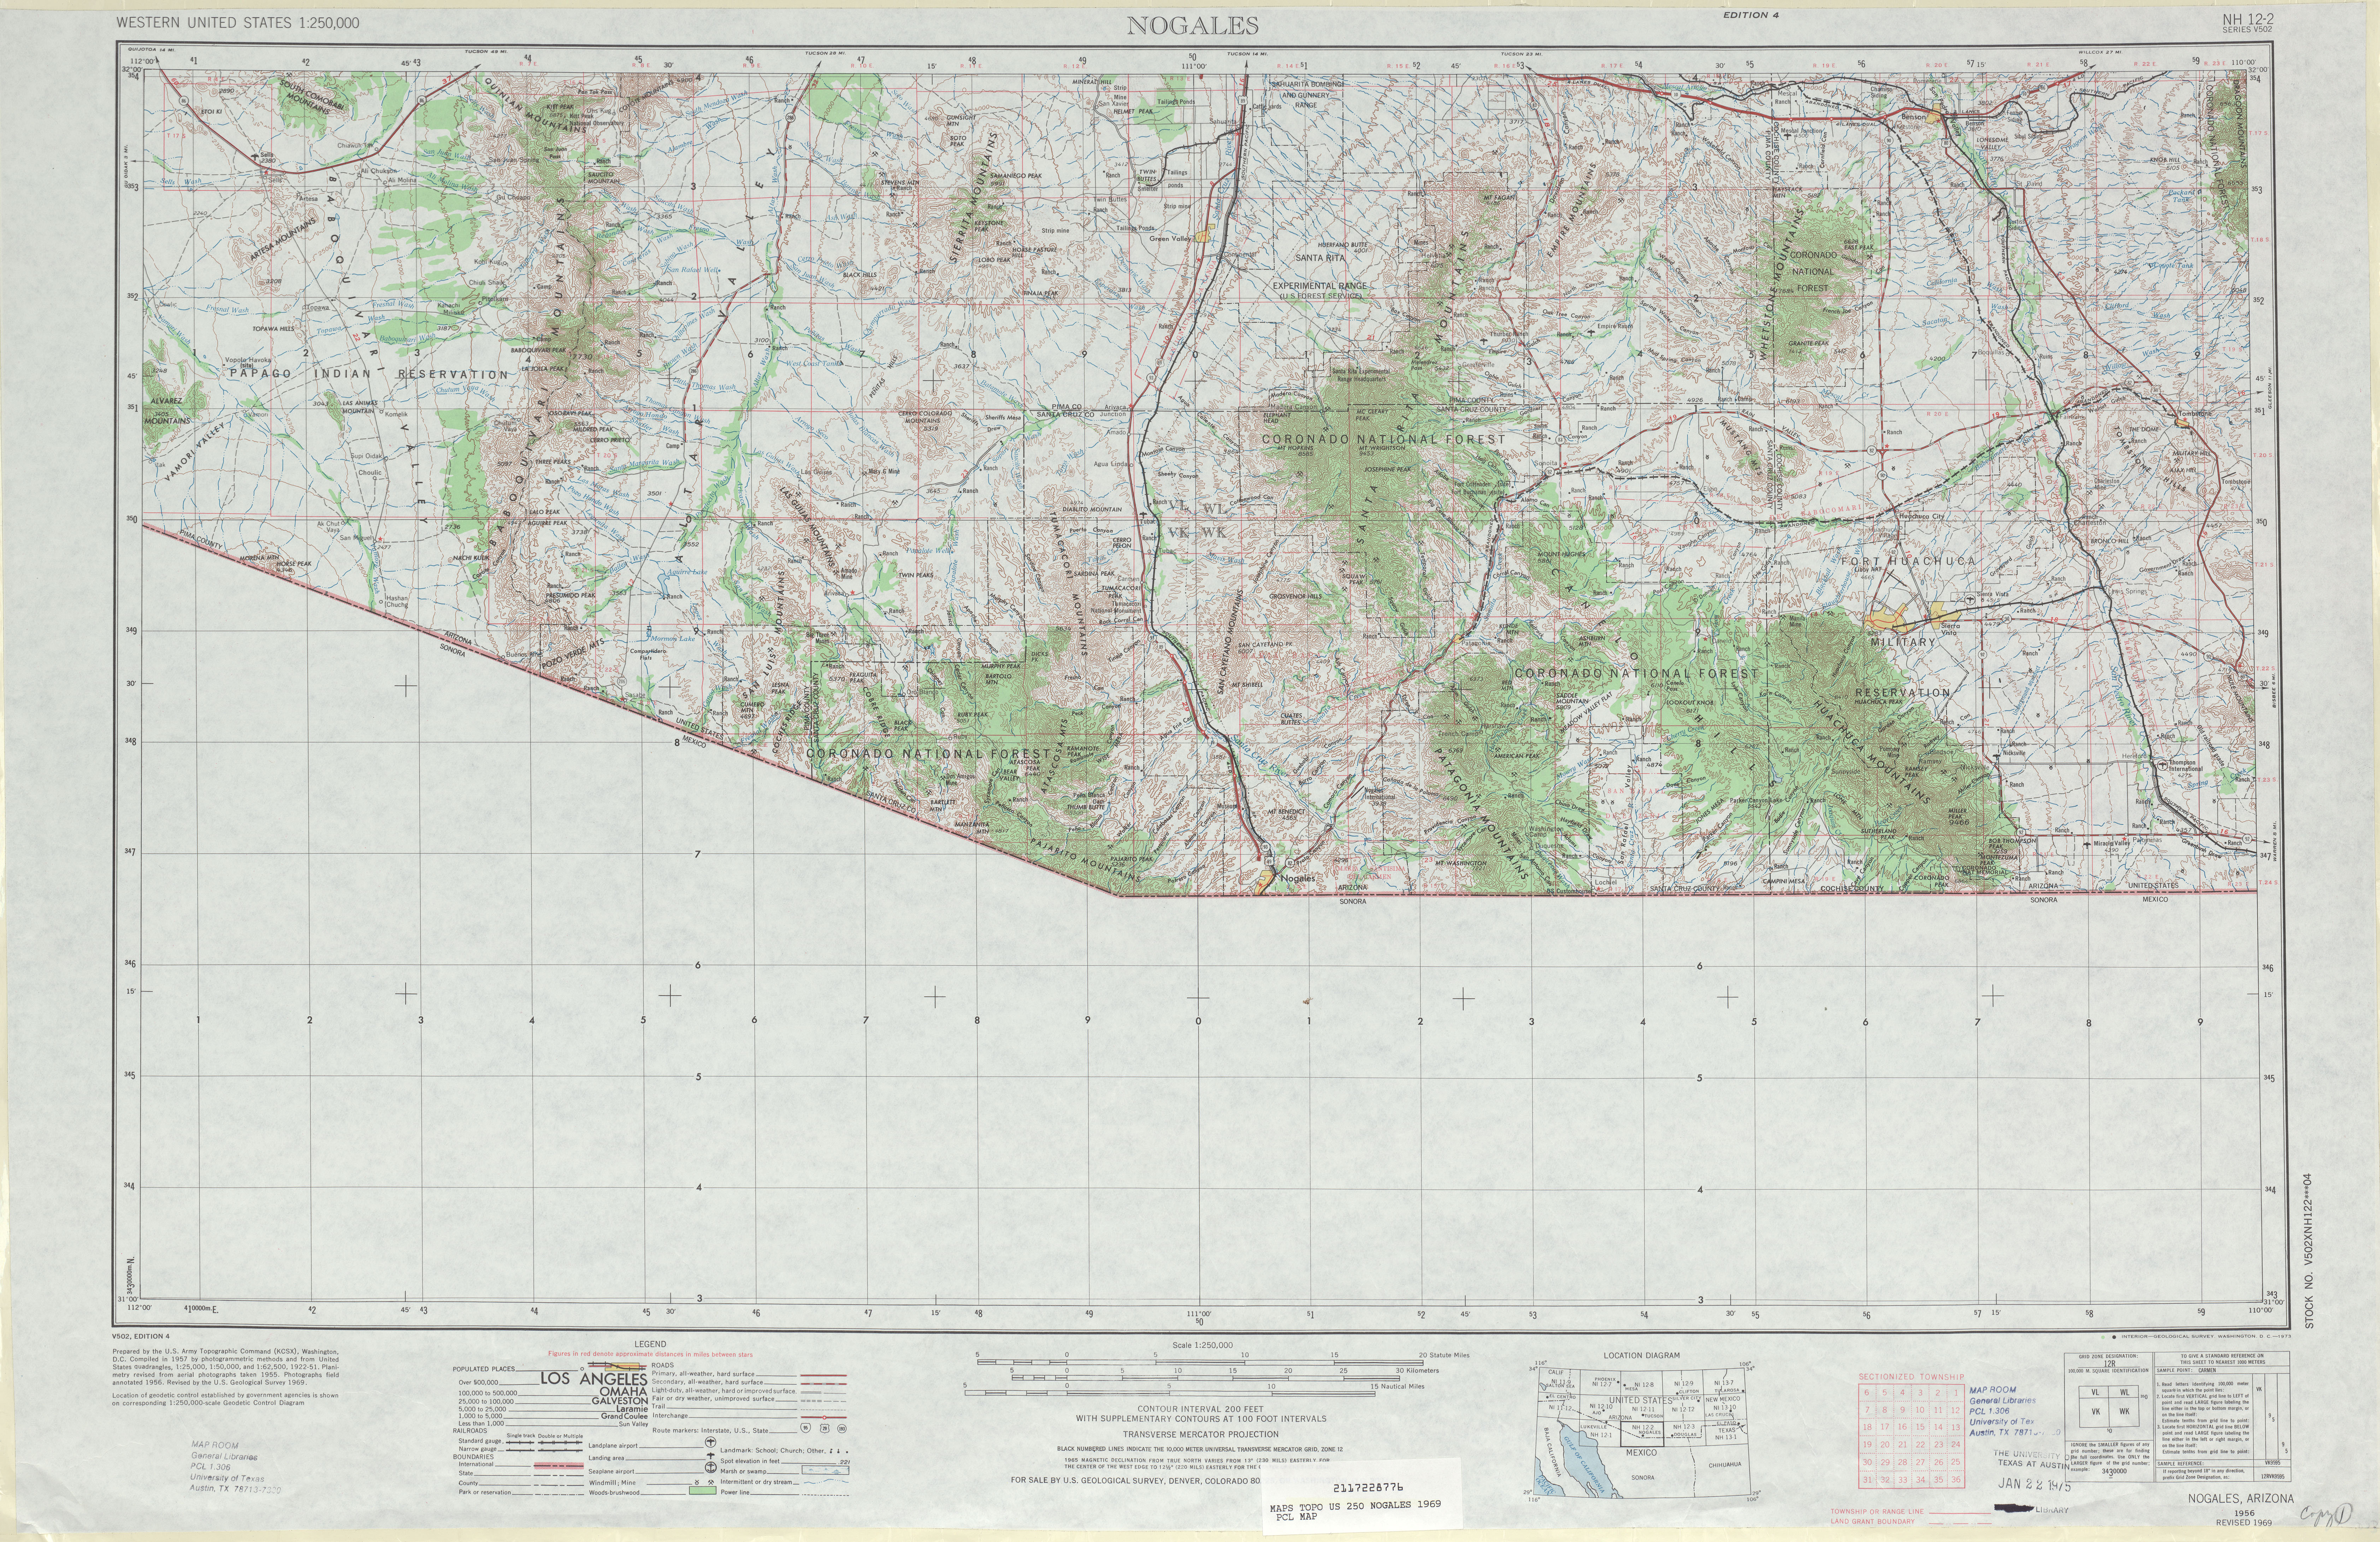 Hoja Nogales del Mapa Topográfico de los Estados Unidos 1969